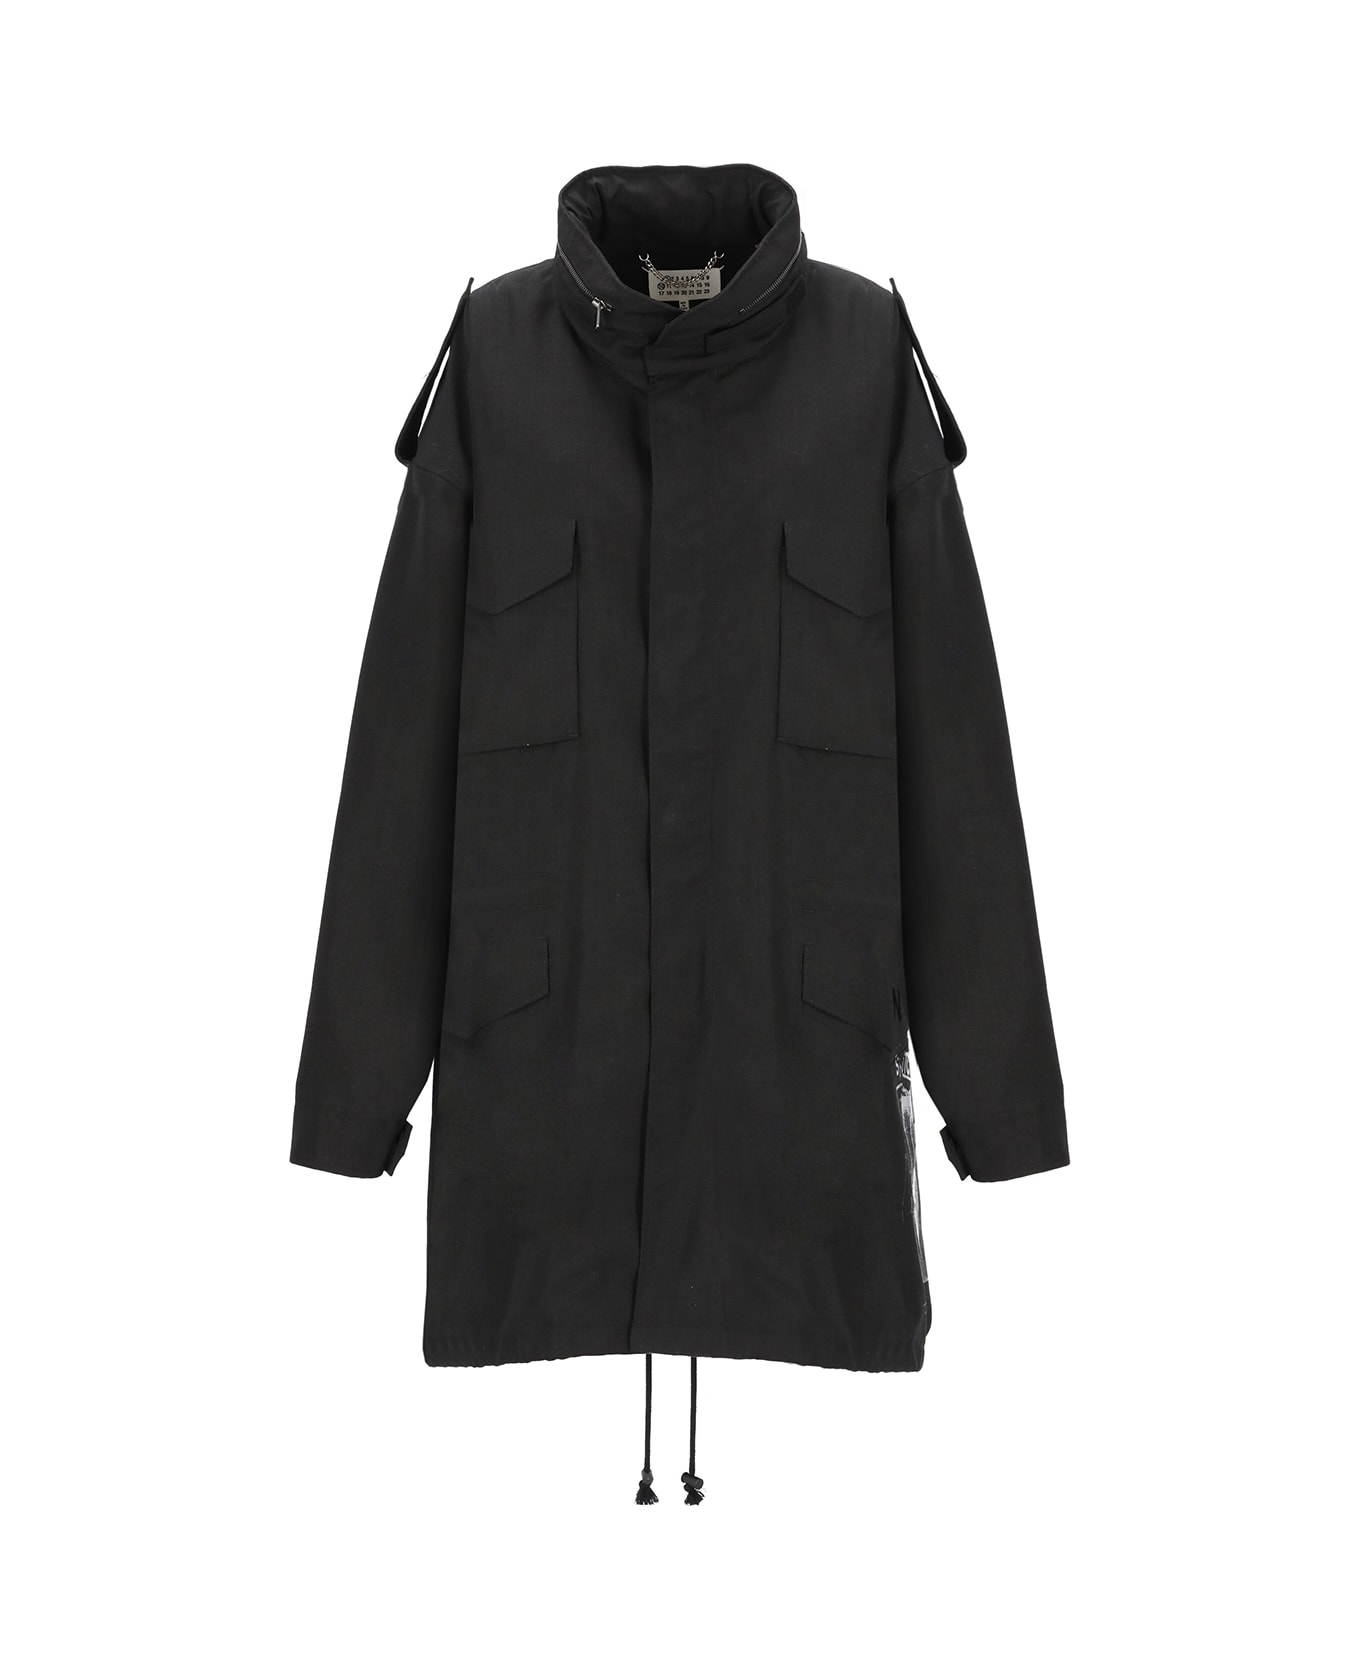 Maison Margiela High-neck Oversized Logo Raincoat - Black コート